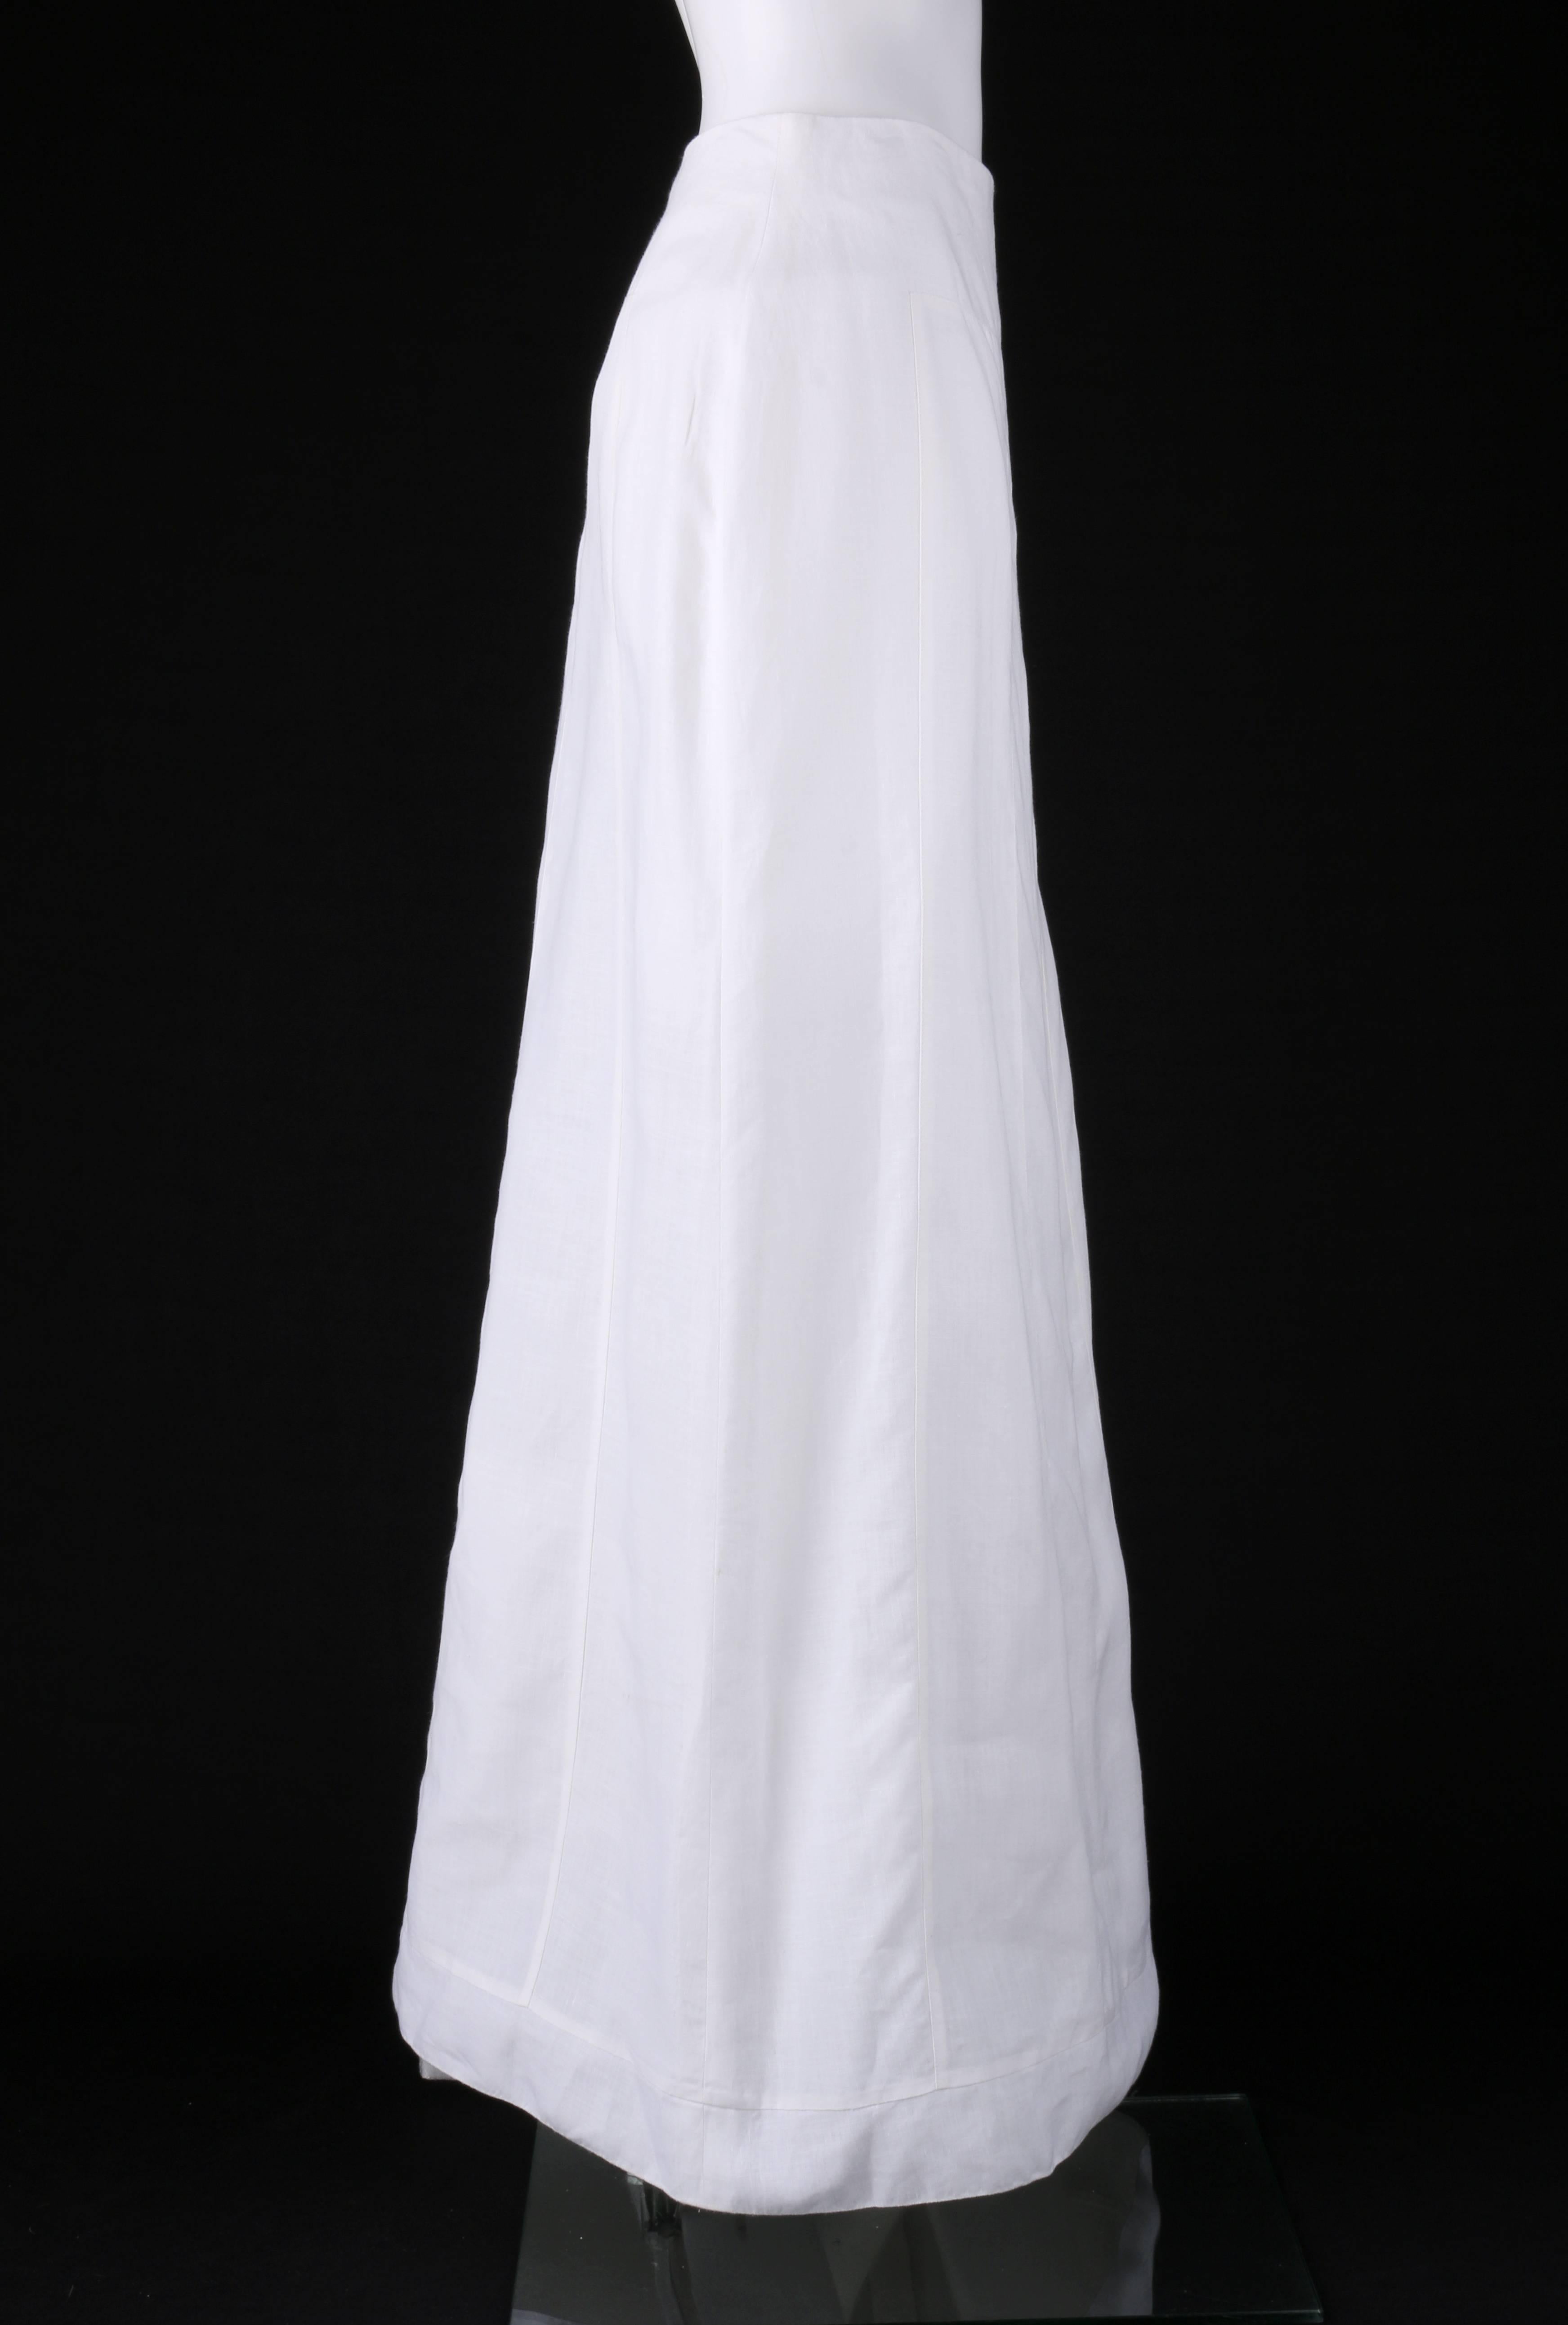 floor length white skirt